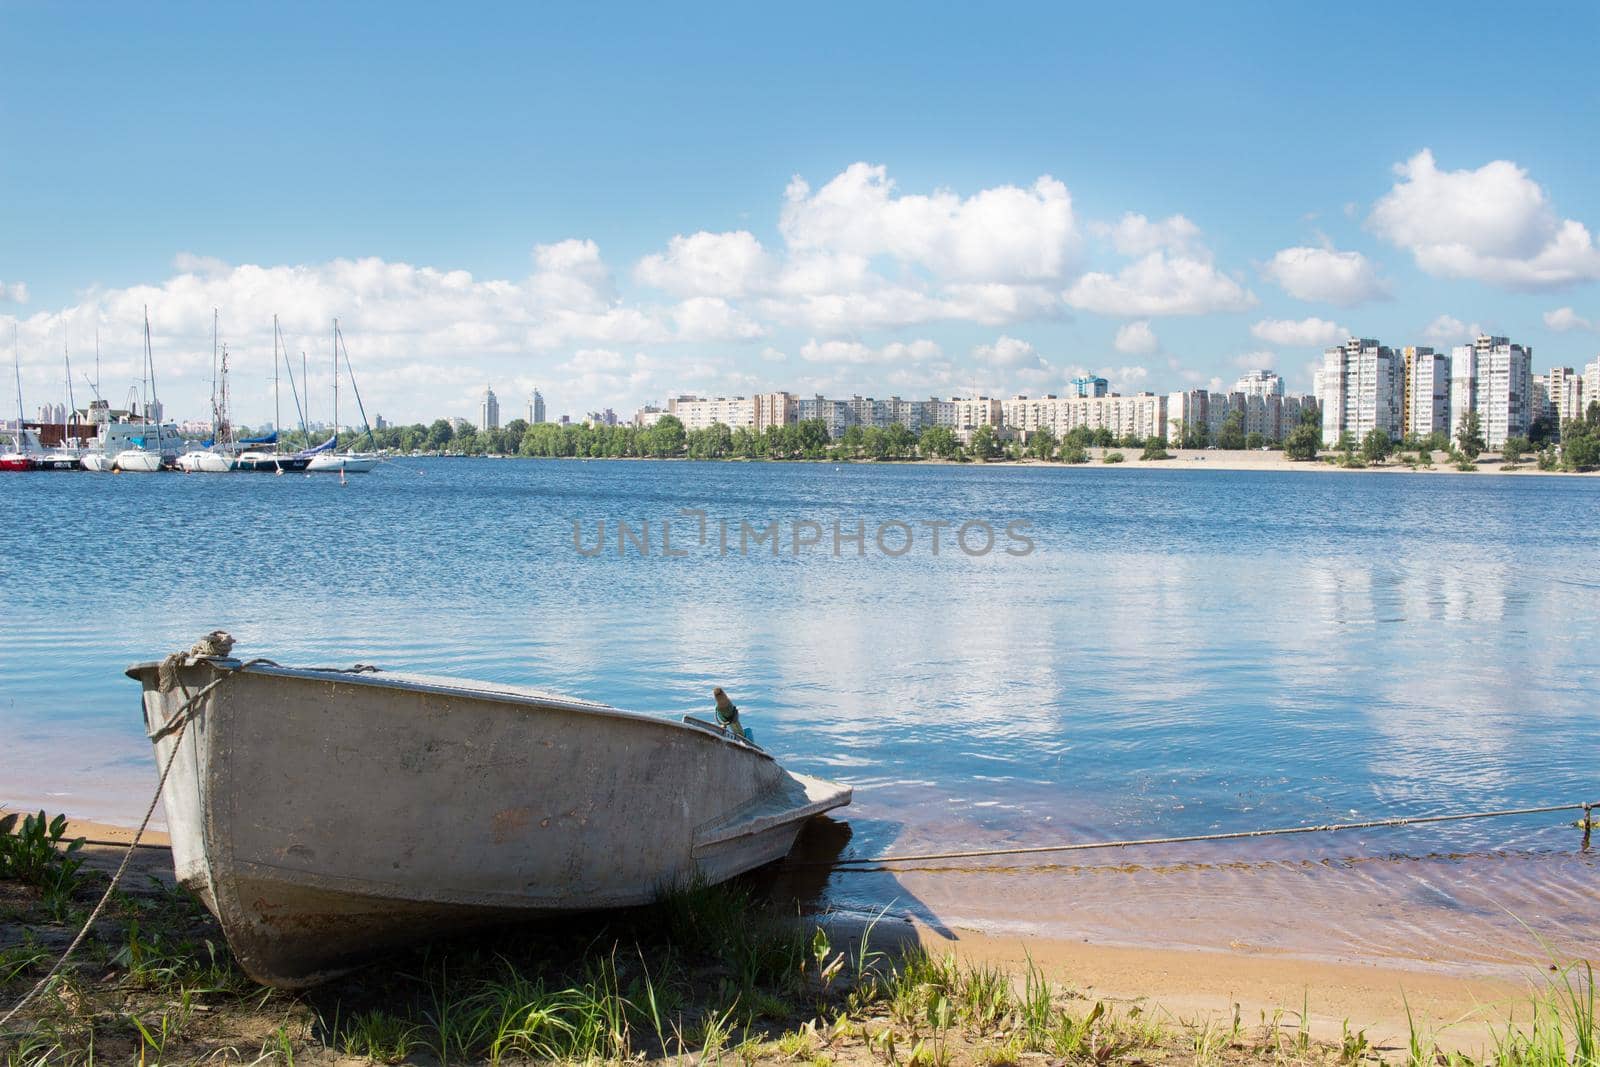 Small fishing boat near marina with sailing yachts on river bank